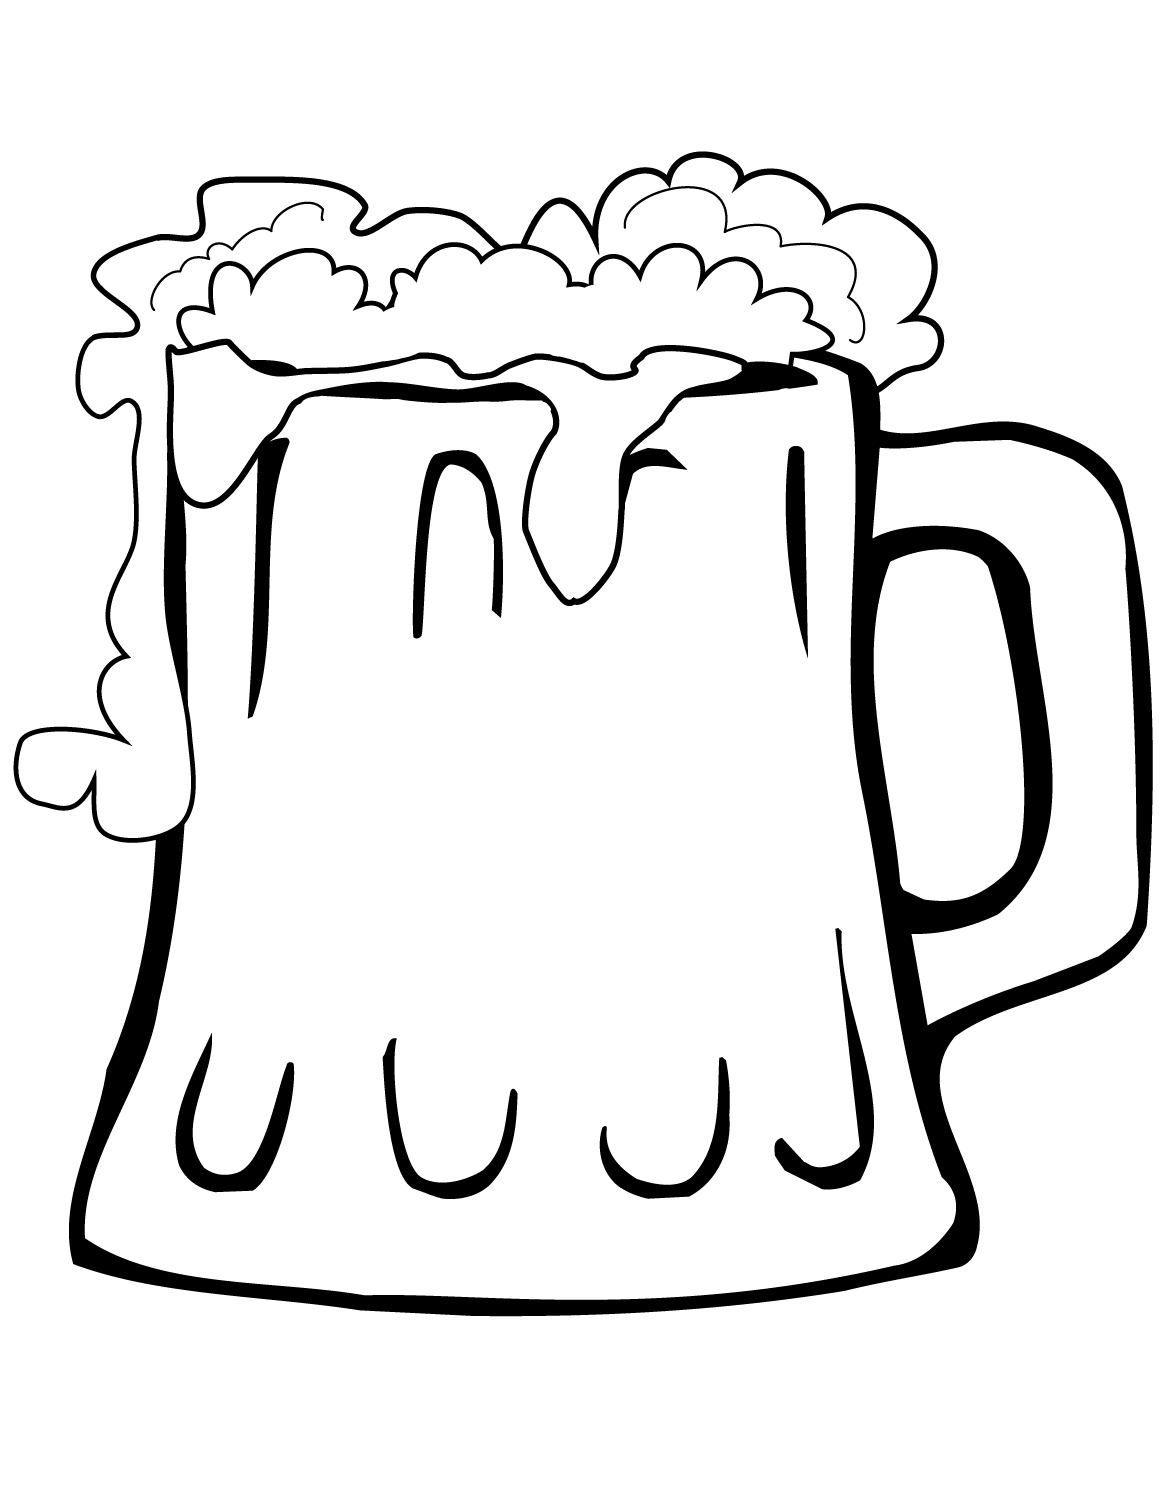 Tranh tô màu cái cốc đựng bia